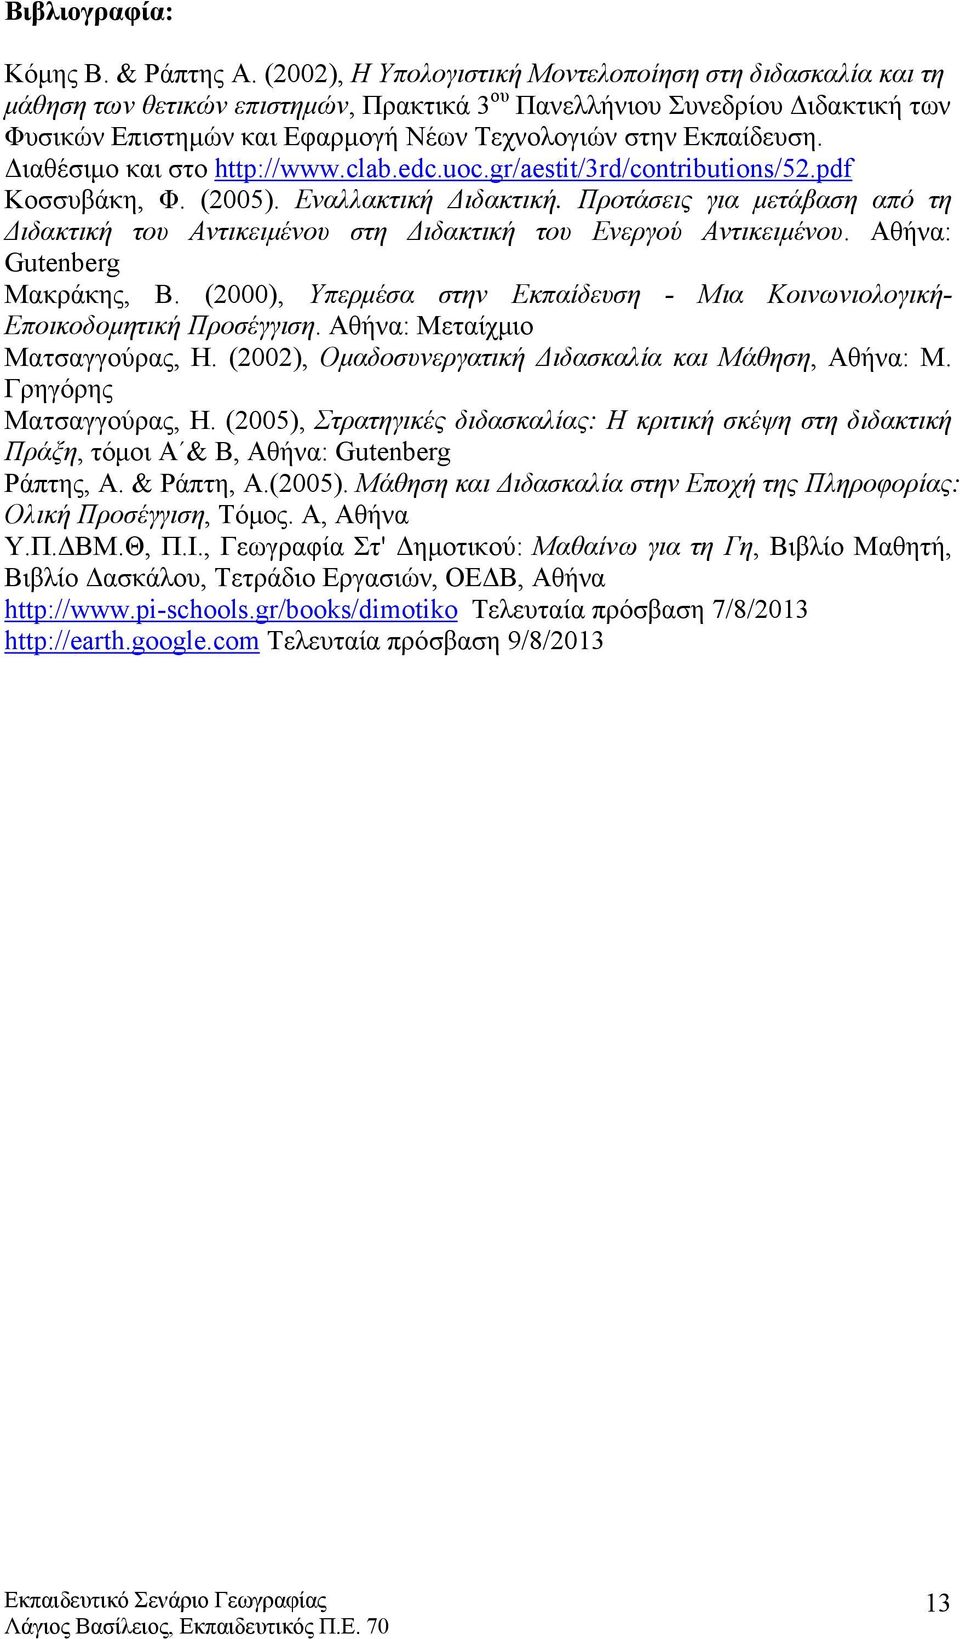 Εκπαίδευση. Διαθέσιμο και στο http://www.clab.edc.uoc.gr/aestit/3rd/contributions/52.pdf Κοσσυβάκη, Φ. (2005). Εναλλακτική Διδακτική.